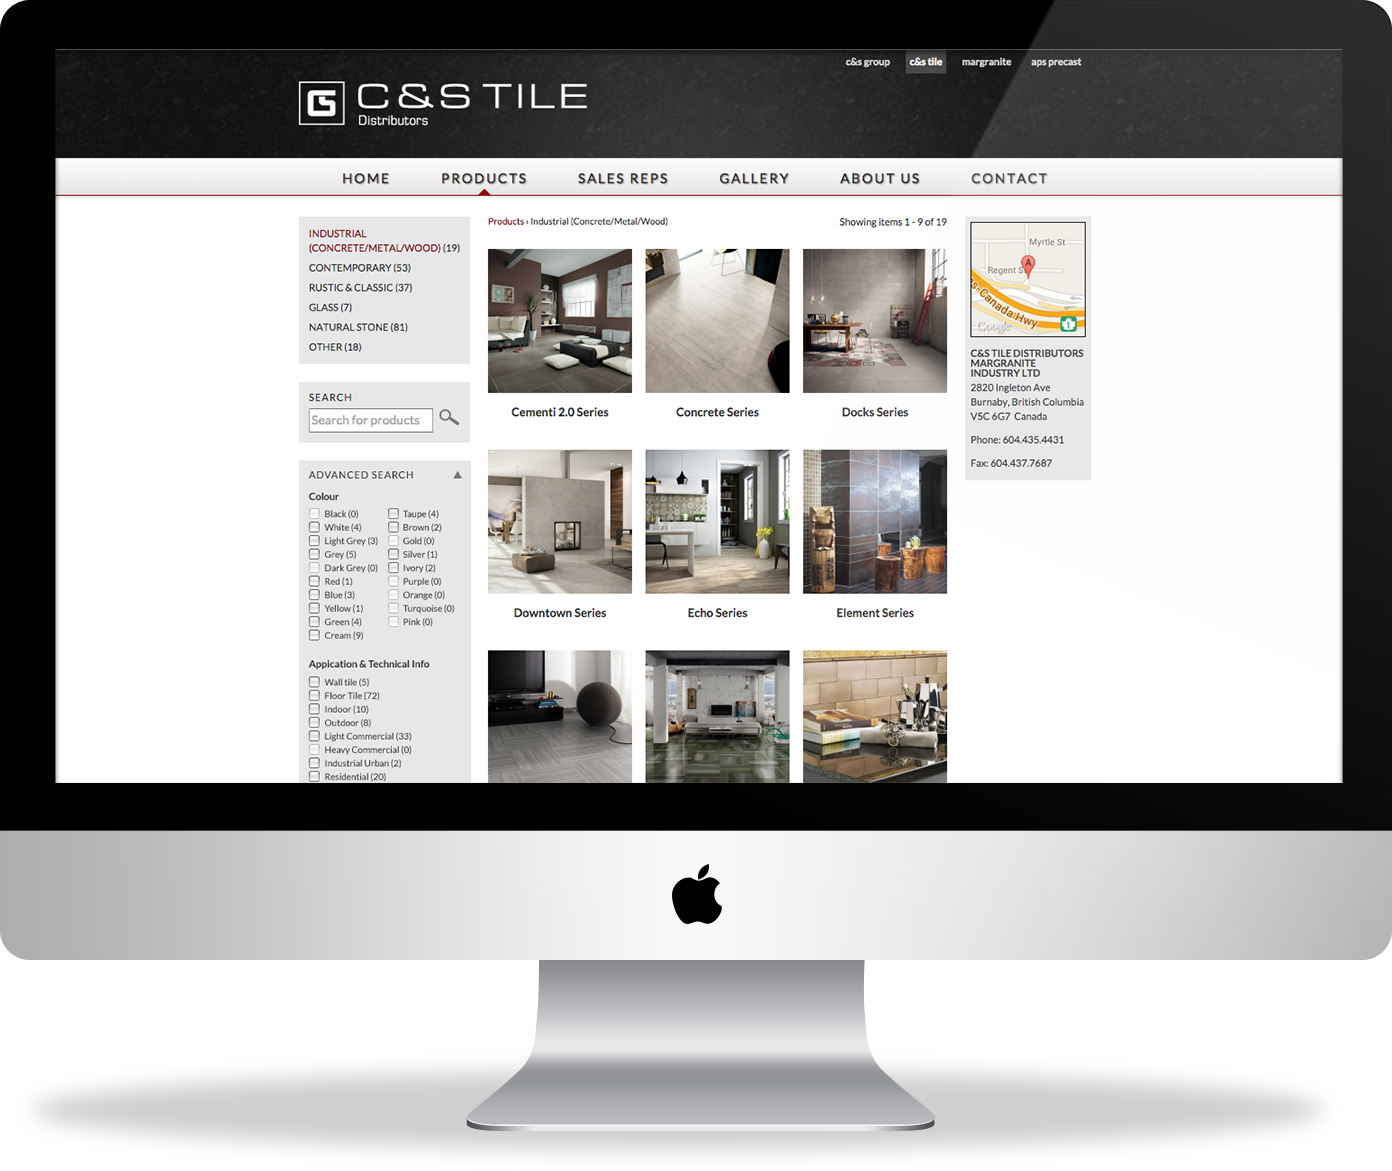 C&S Tile website - catalogue